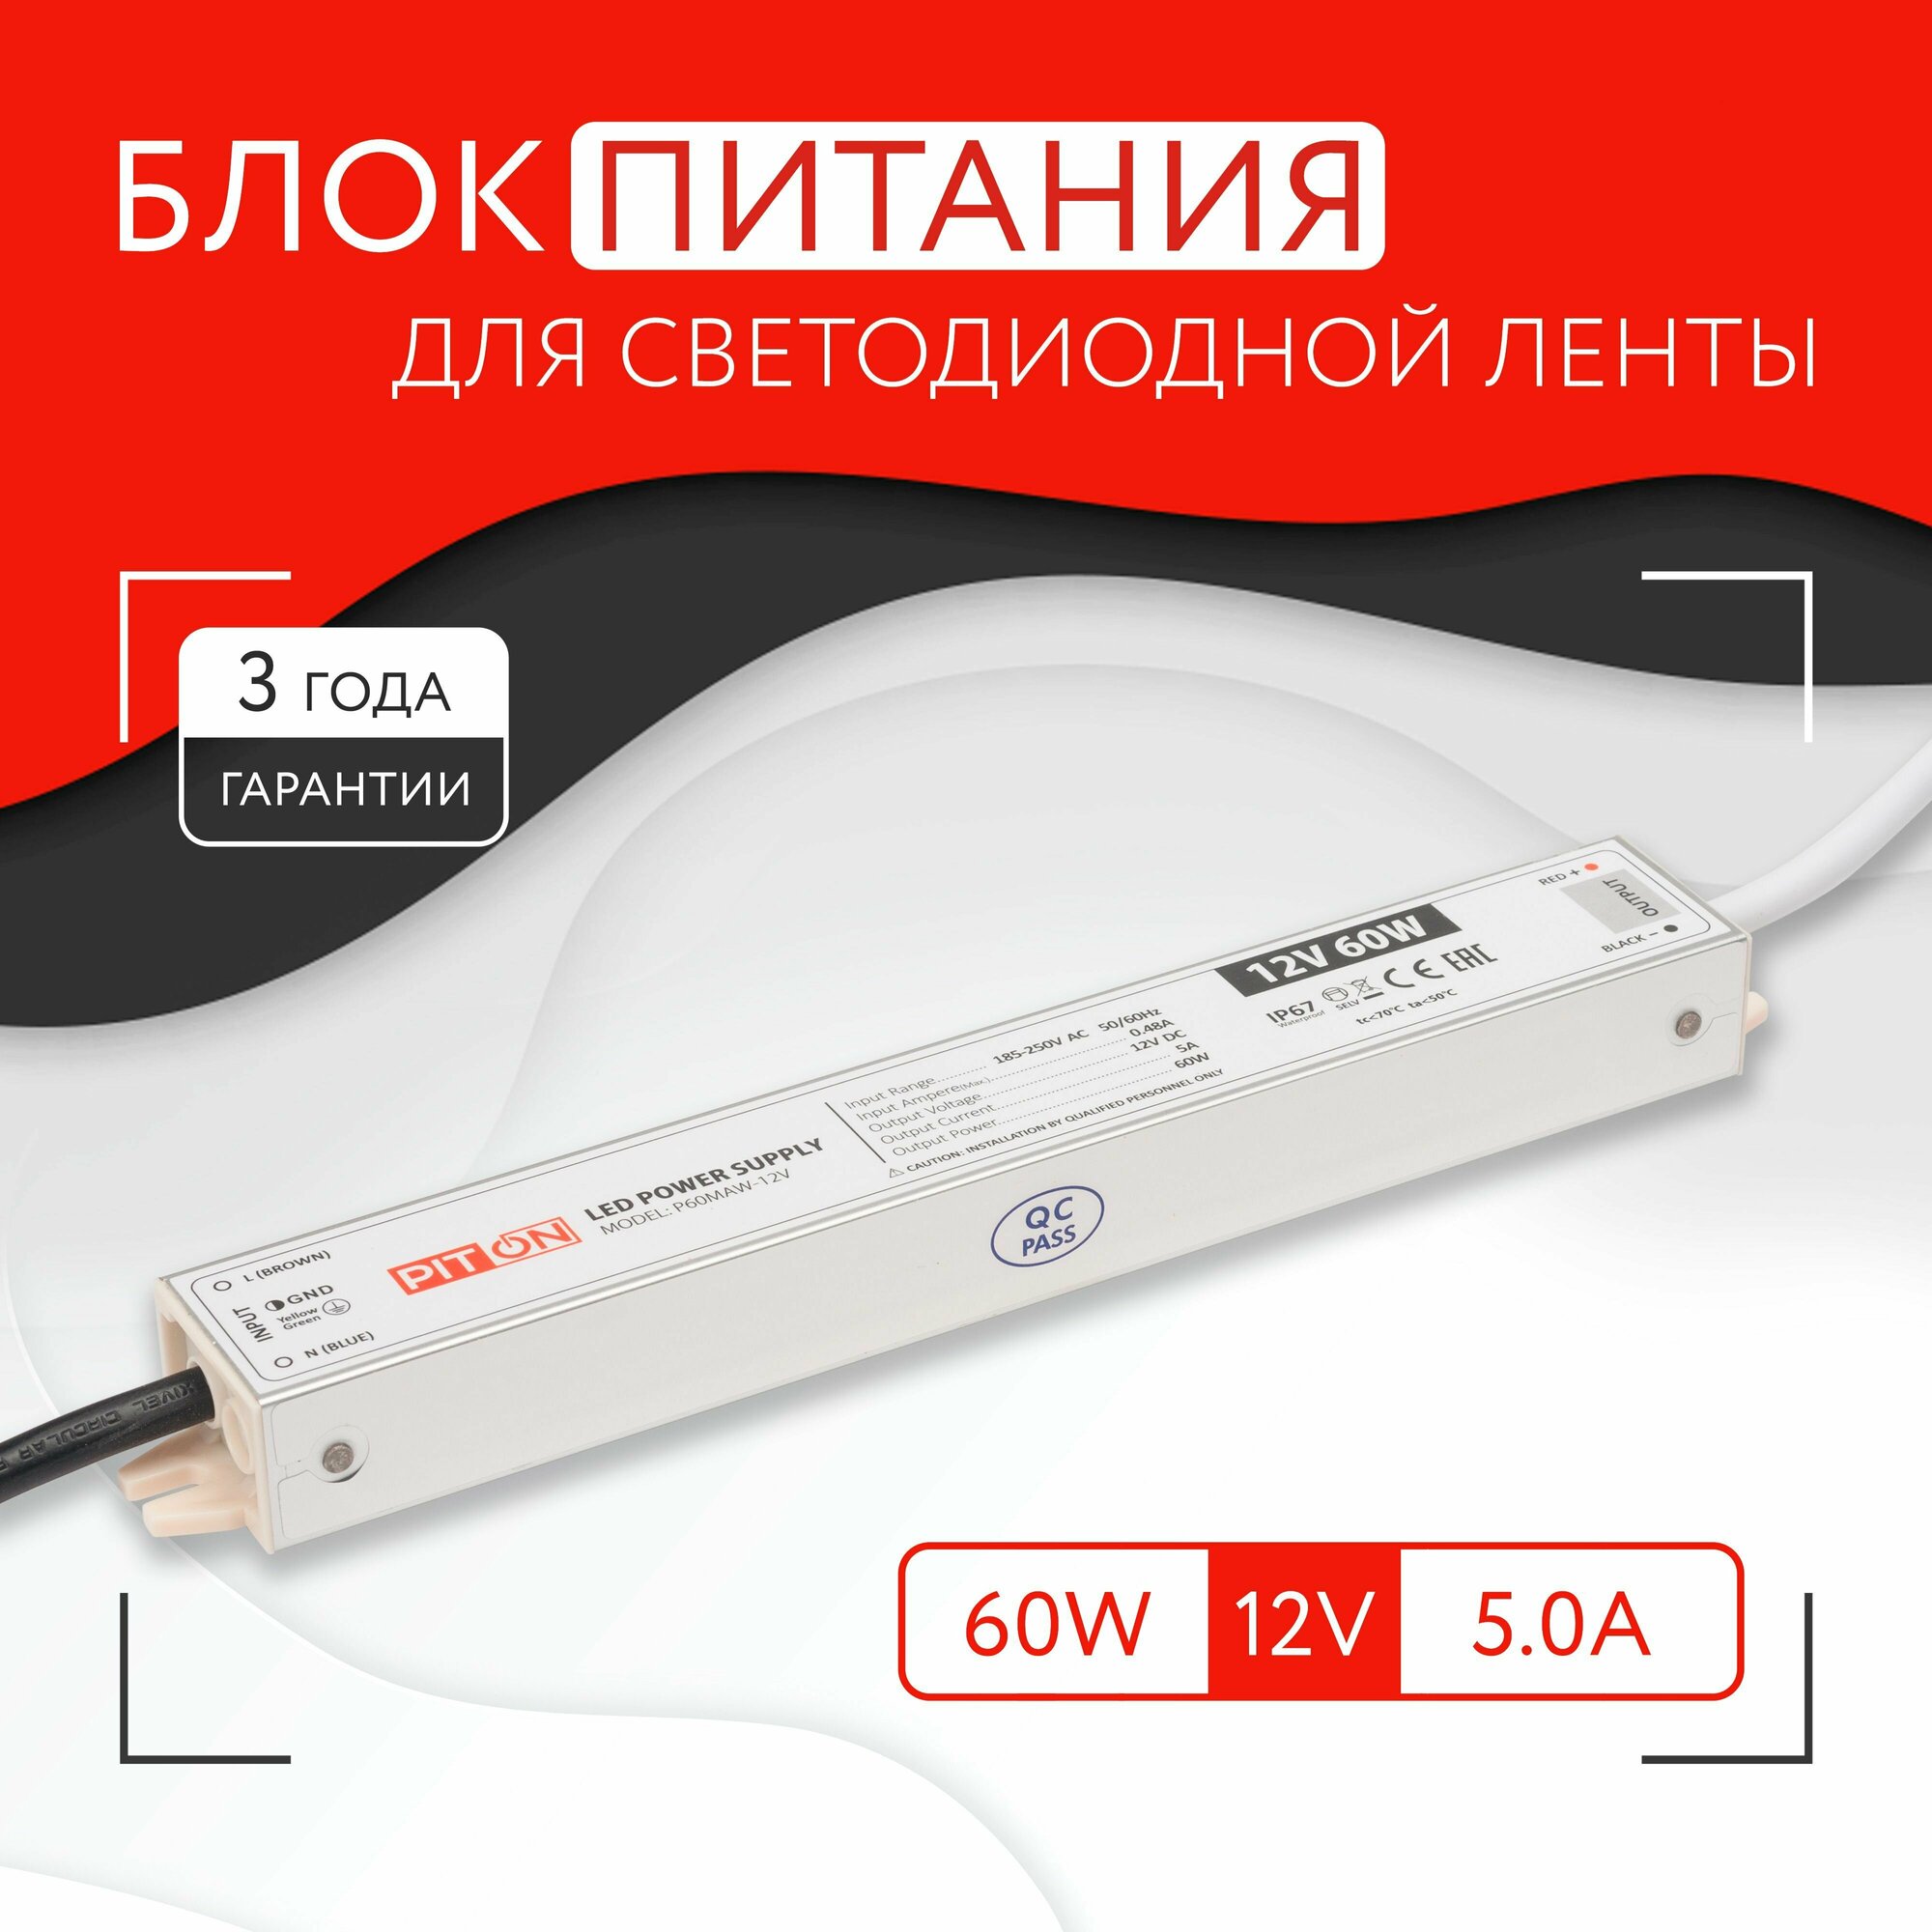 Блок питания для светодиодной ленты (60W, 12V, IP67)